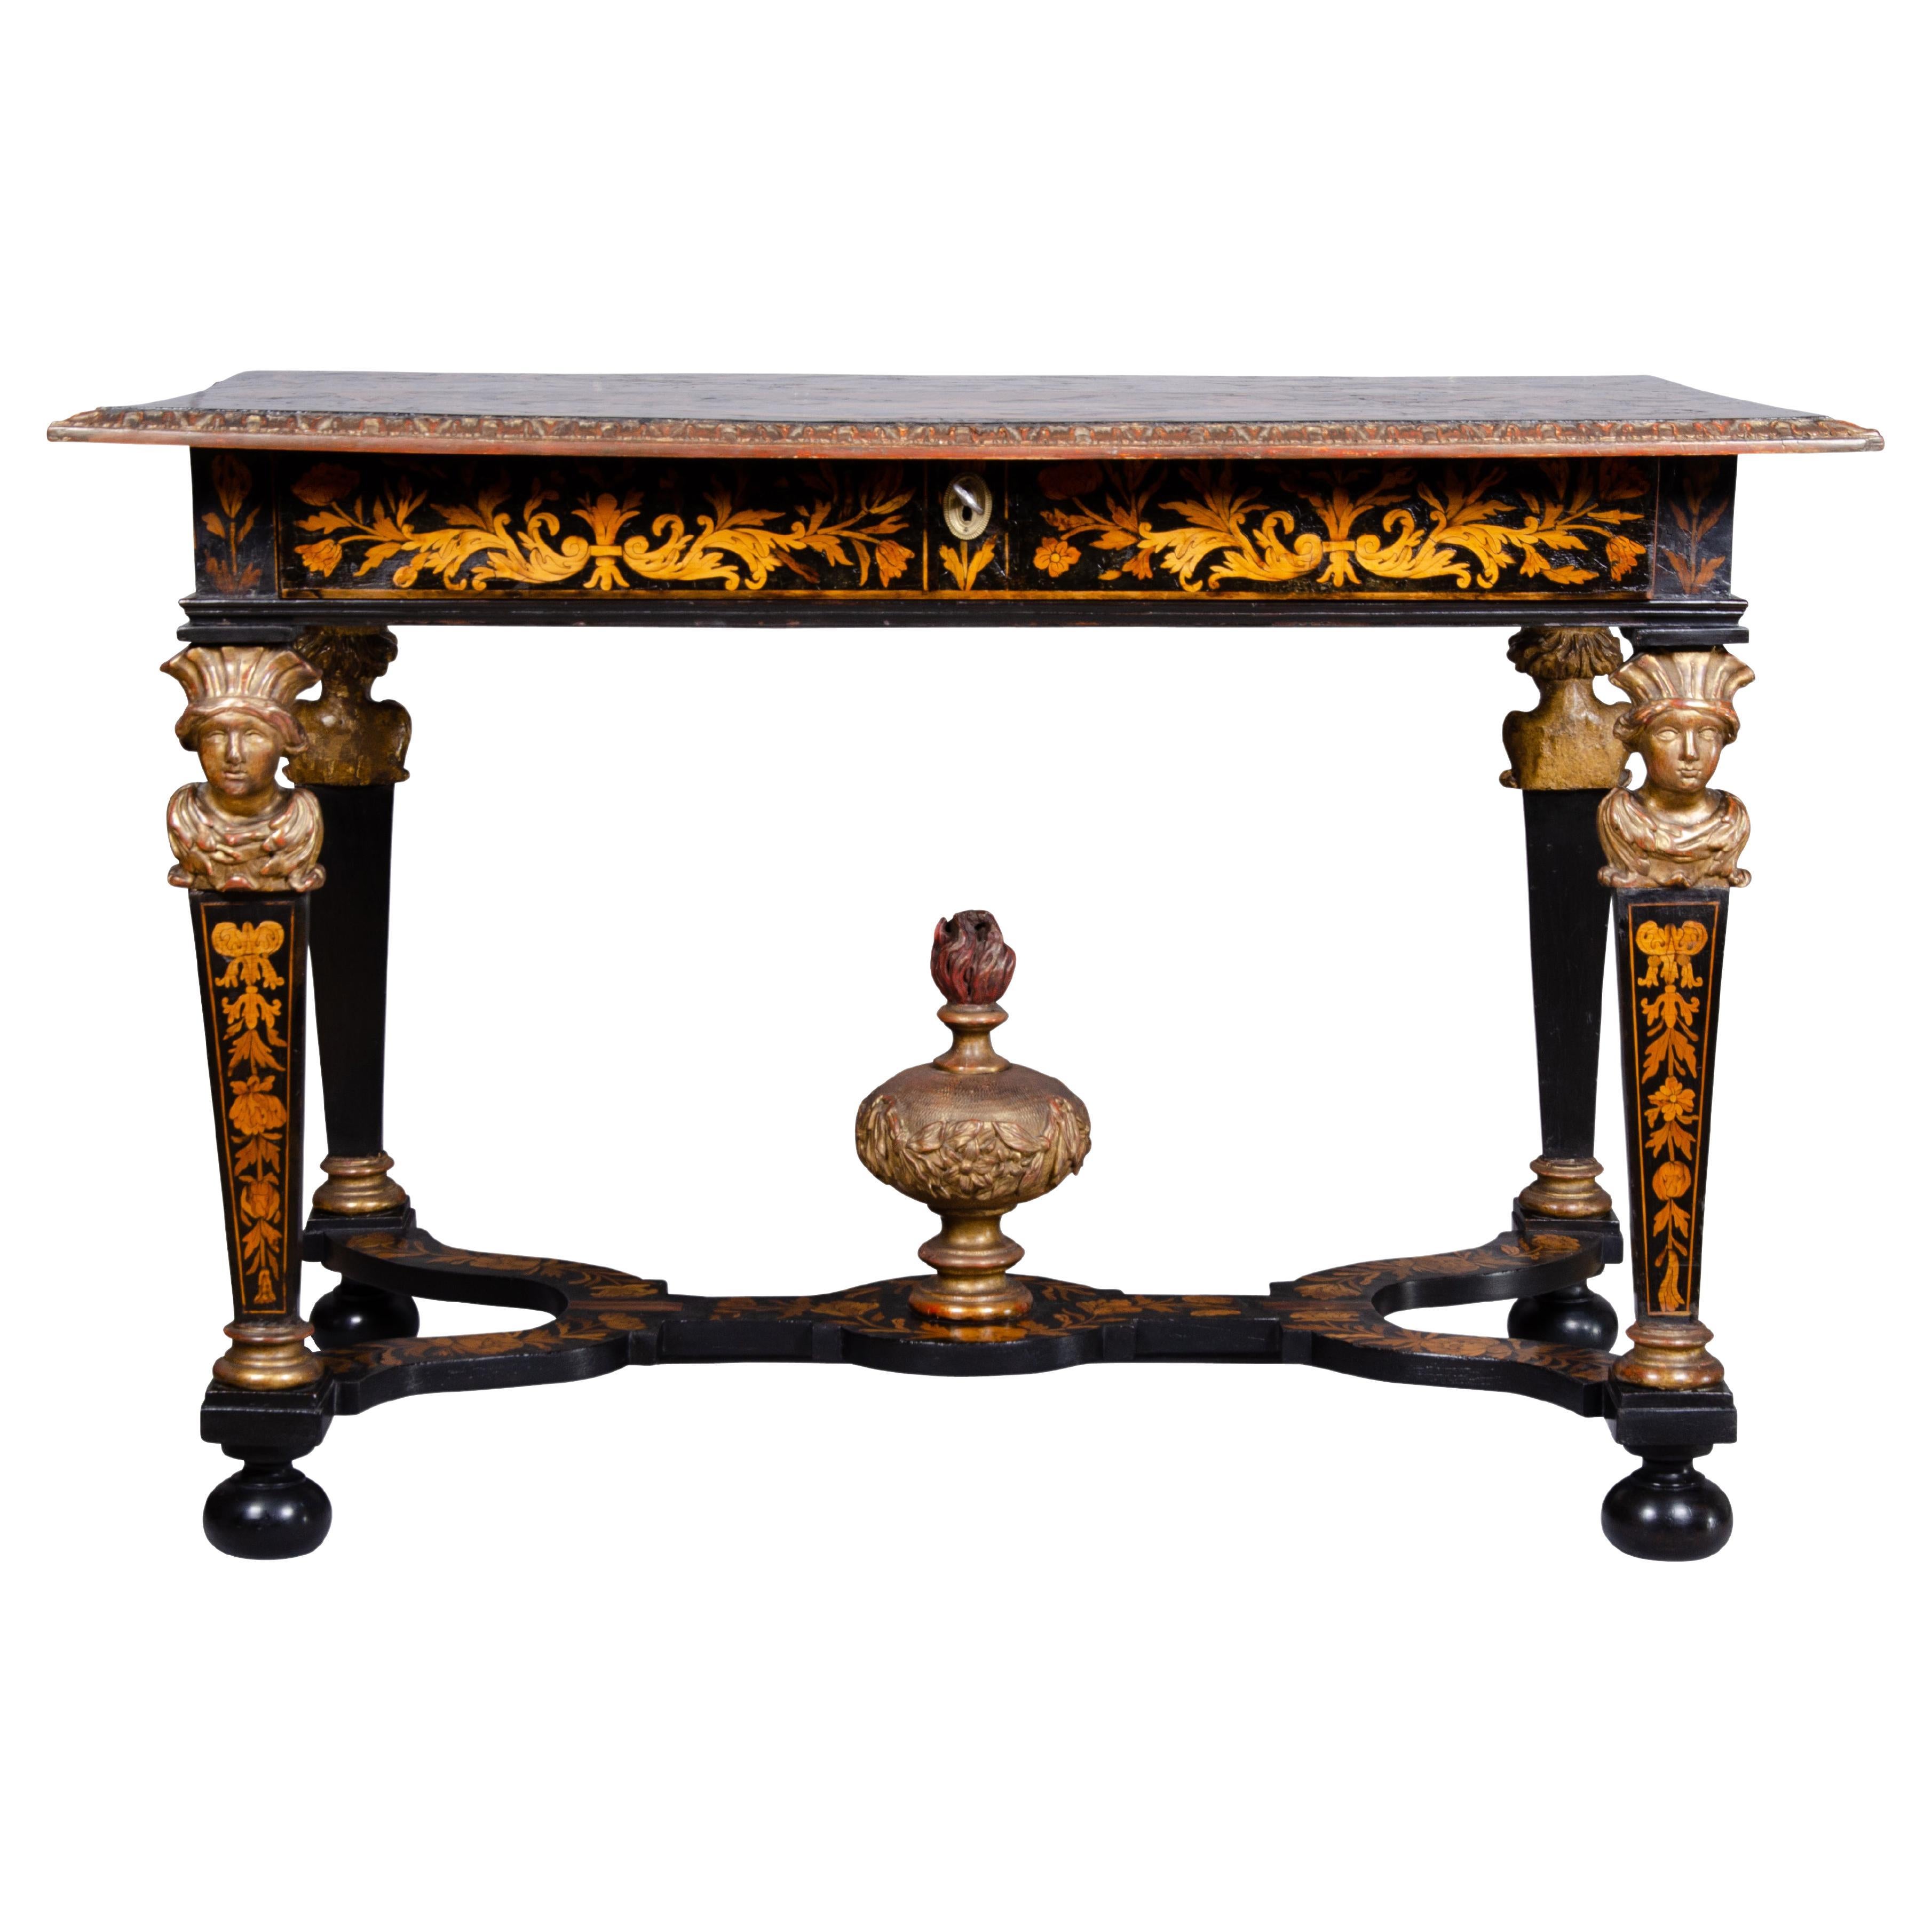 Table d'écriture/table basse en marqueterie et ébène de style Louis XIV